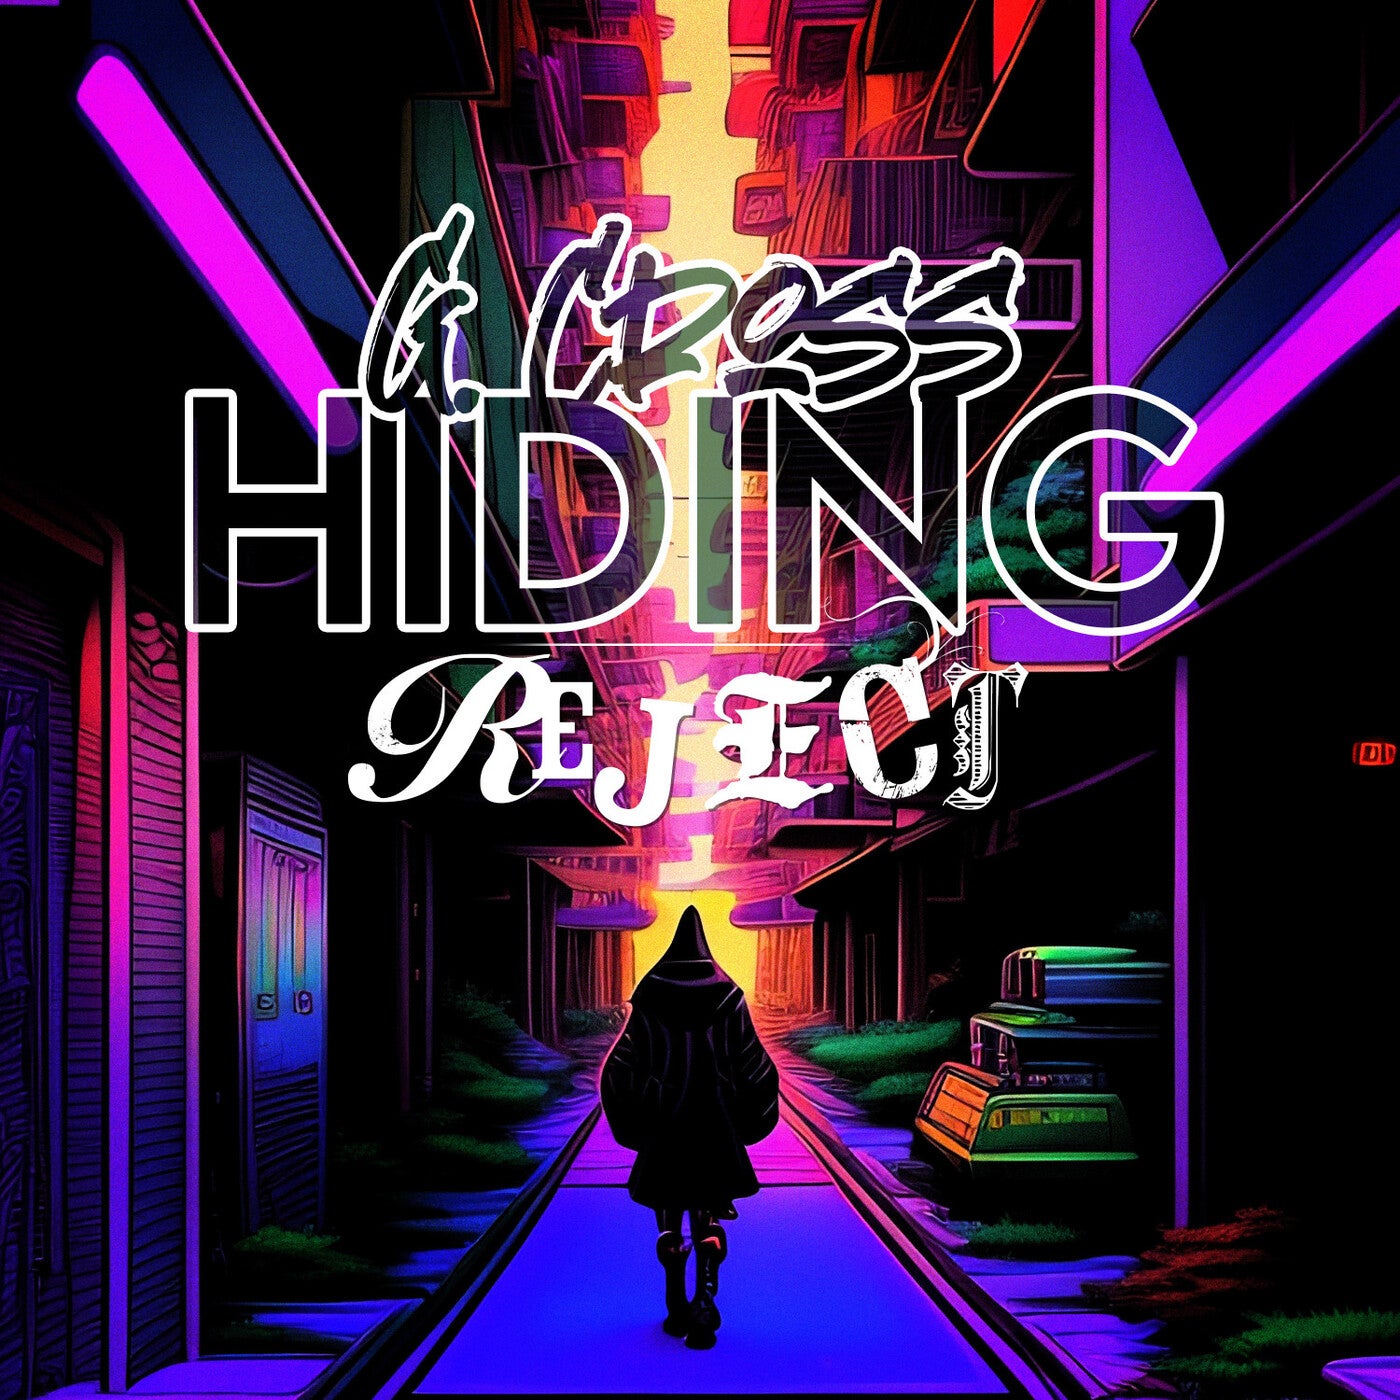 Hiding / Reject